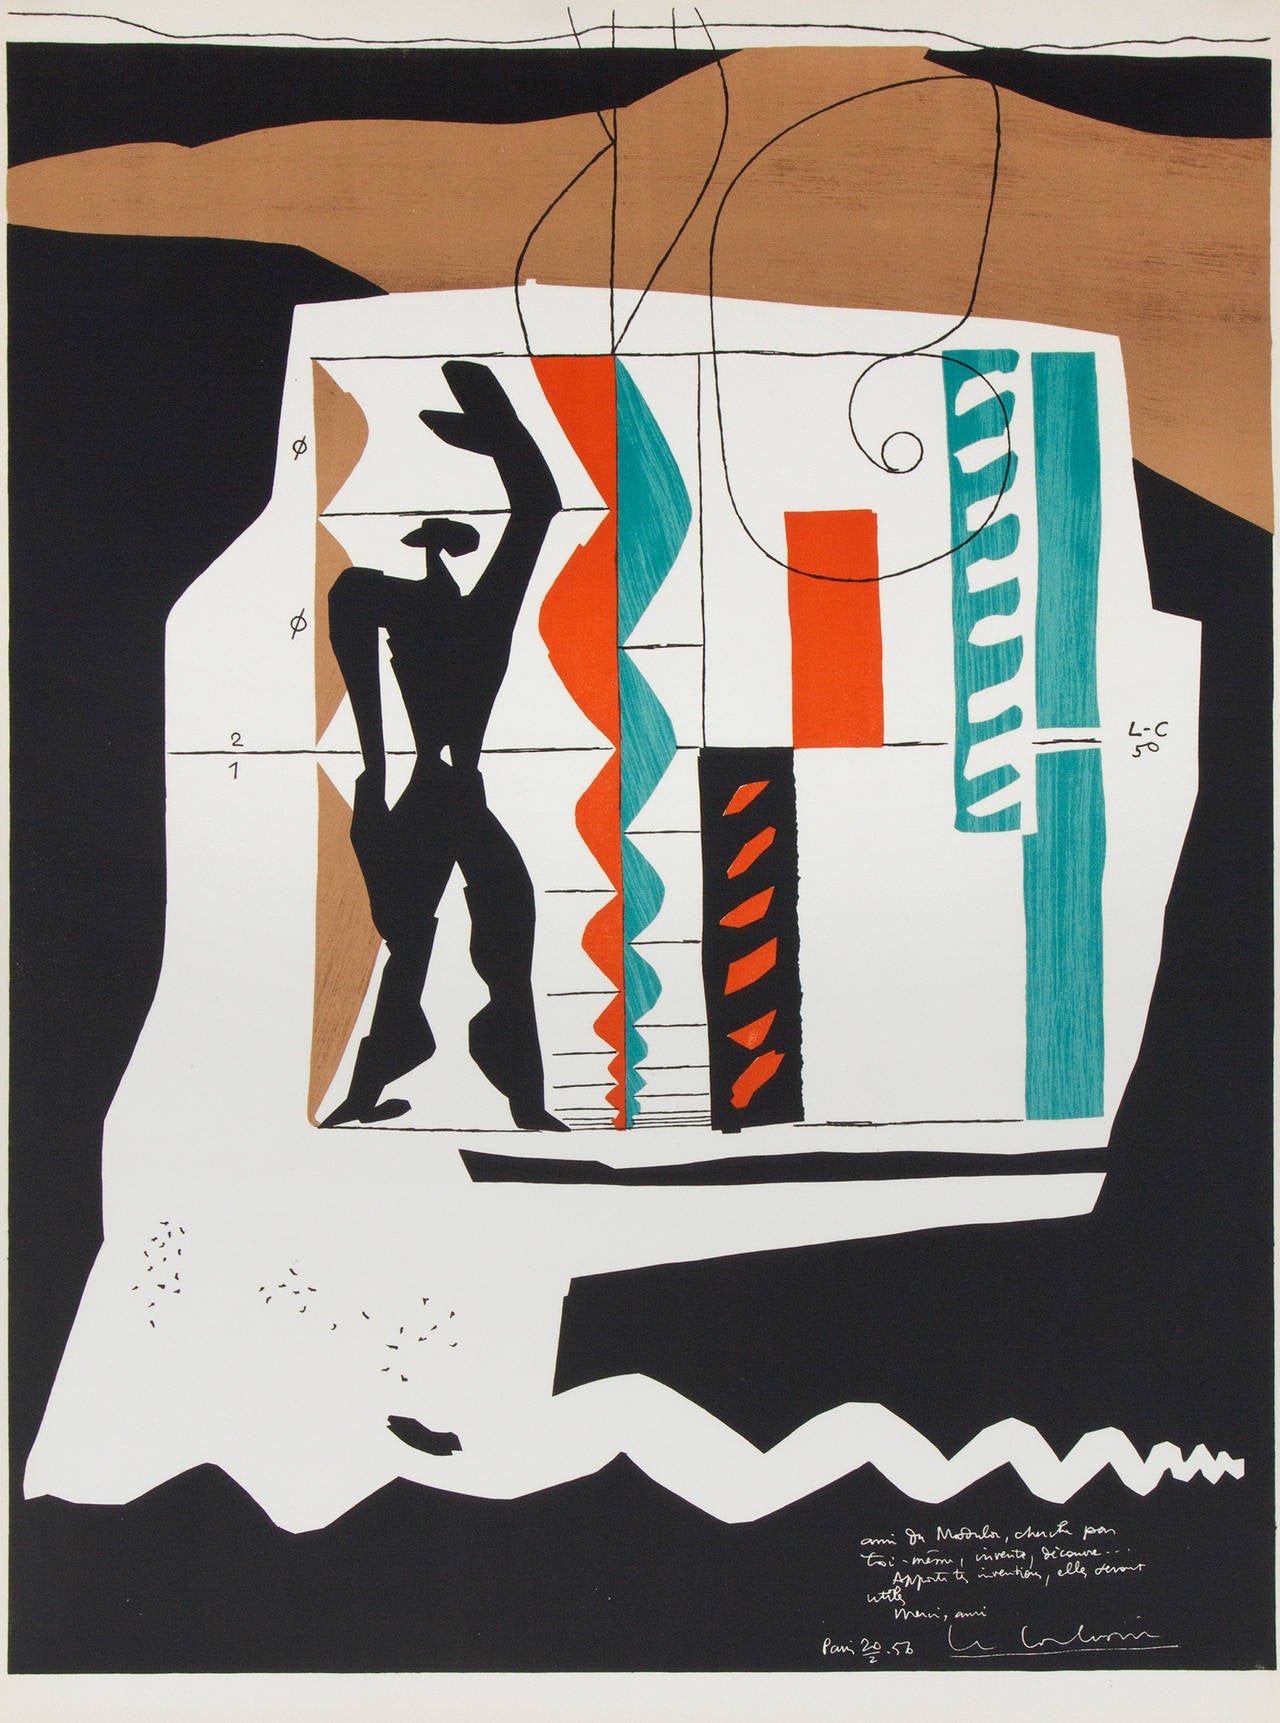 Le Corbusier Abstract Print - Modulor